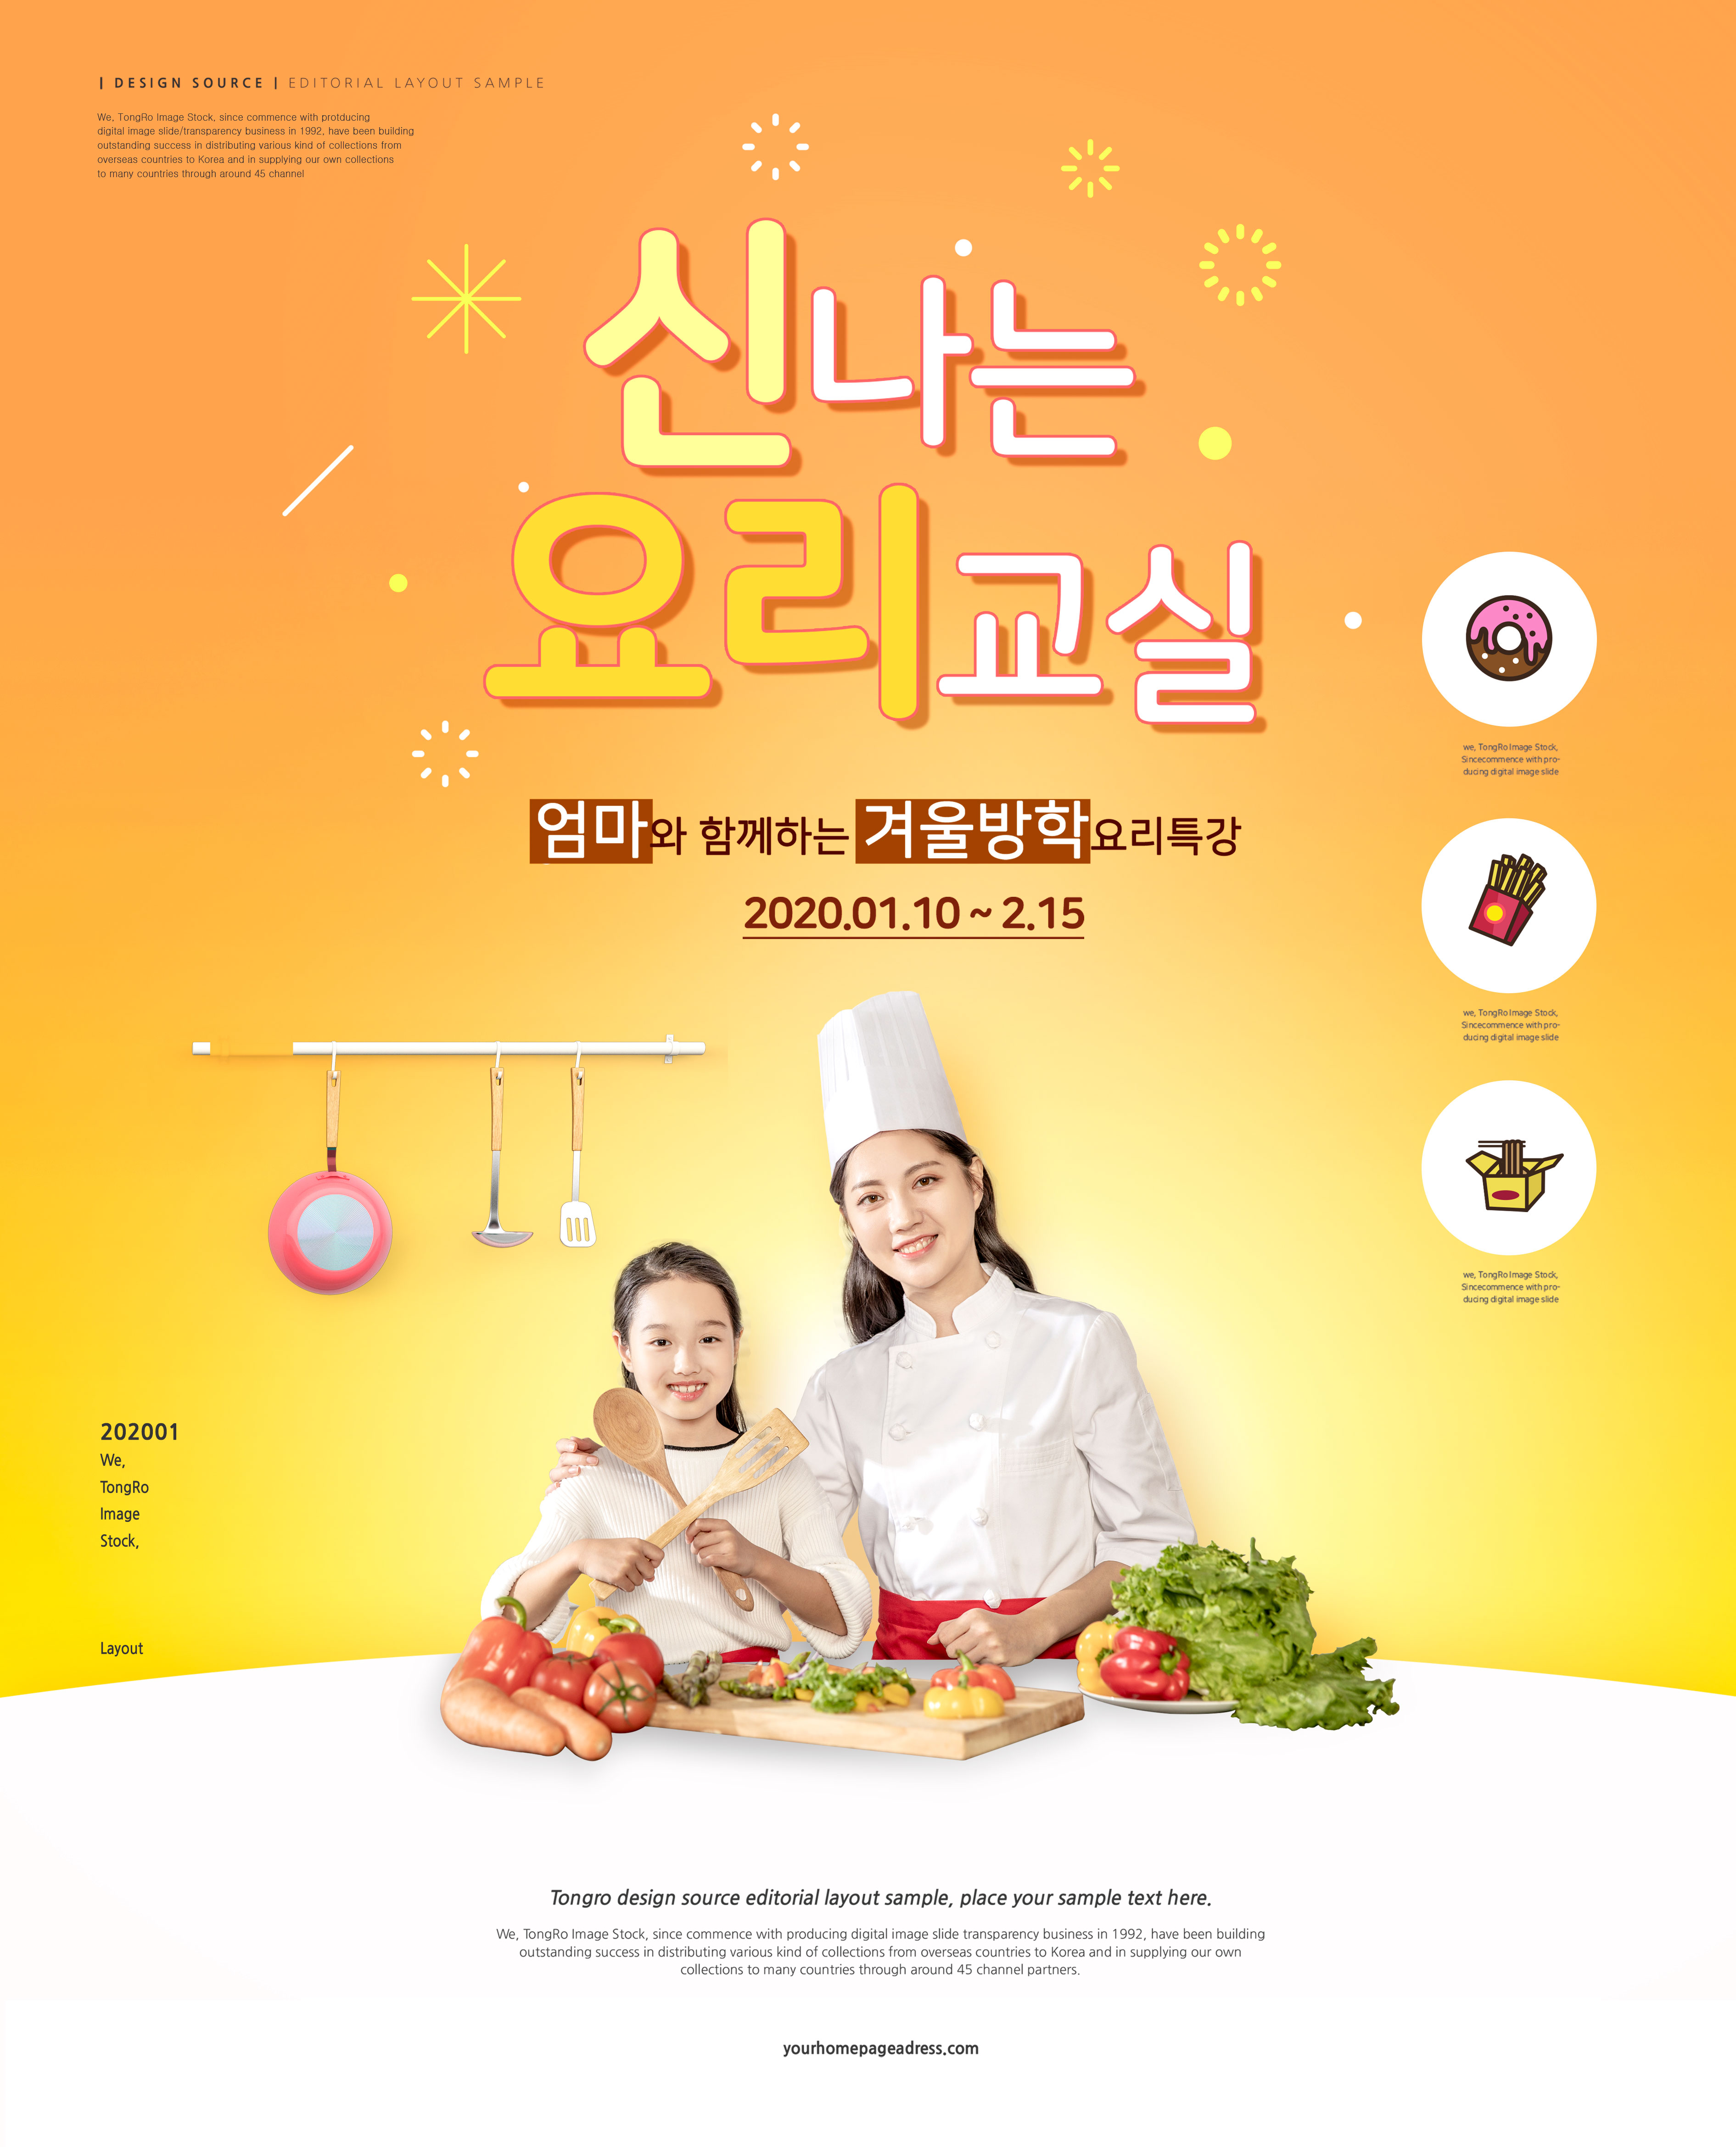 儿童寒假/暑假烹饪培训推广宣传海报psd素材插图